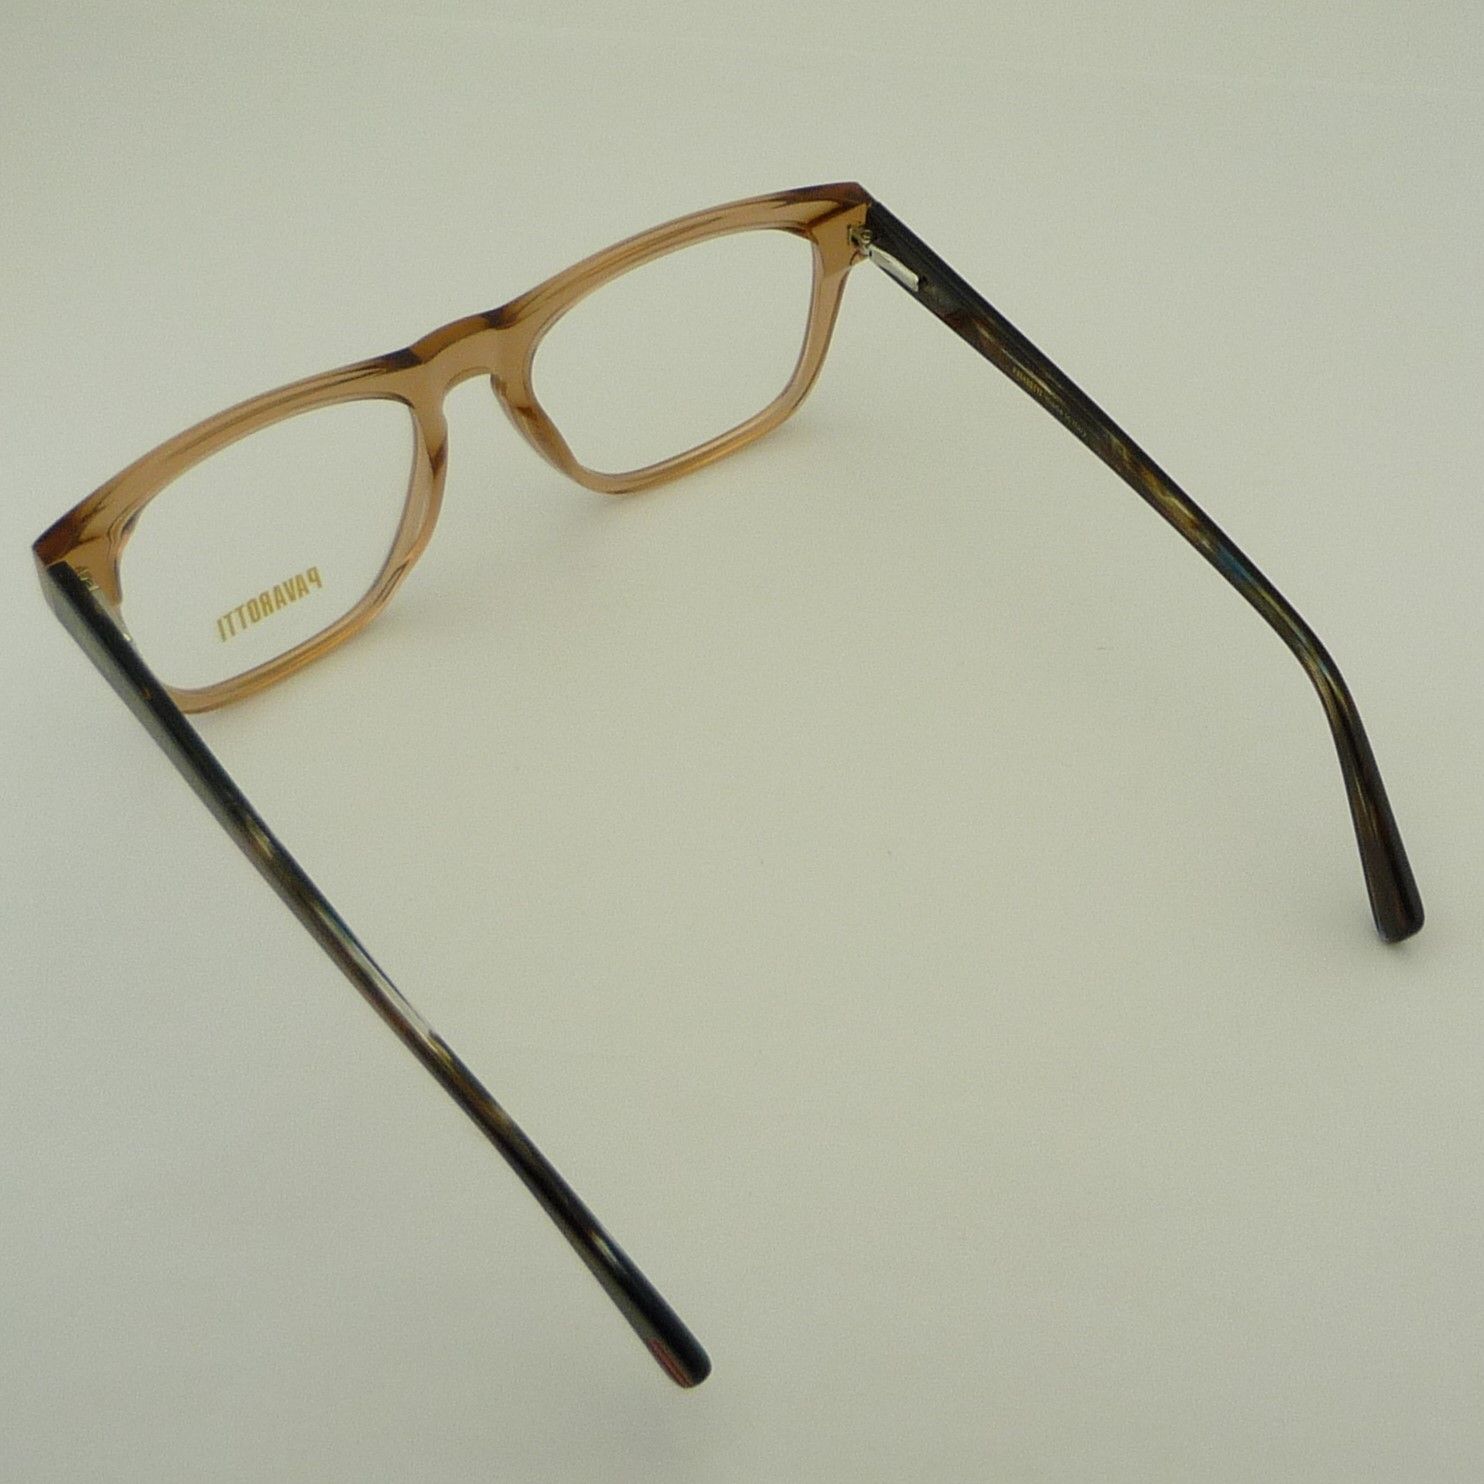 فریم عینک طبی پاواروتی مدل YC28043-C4 -  - 6